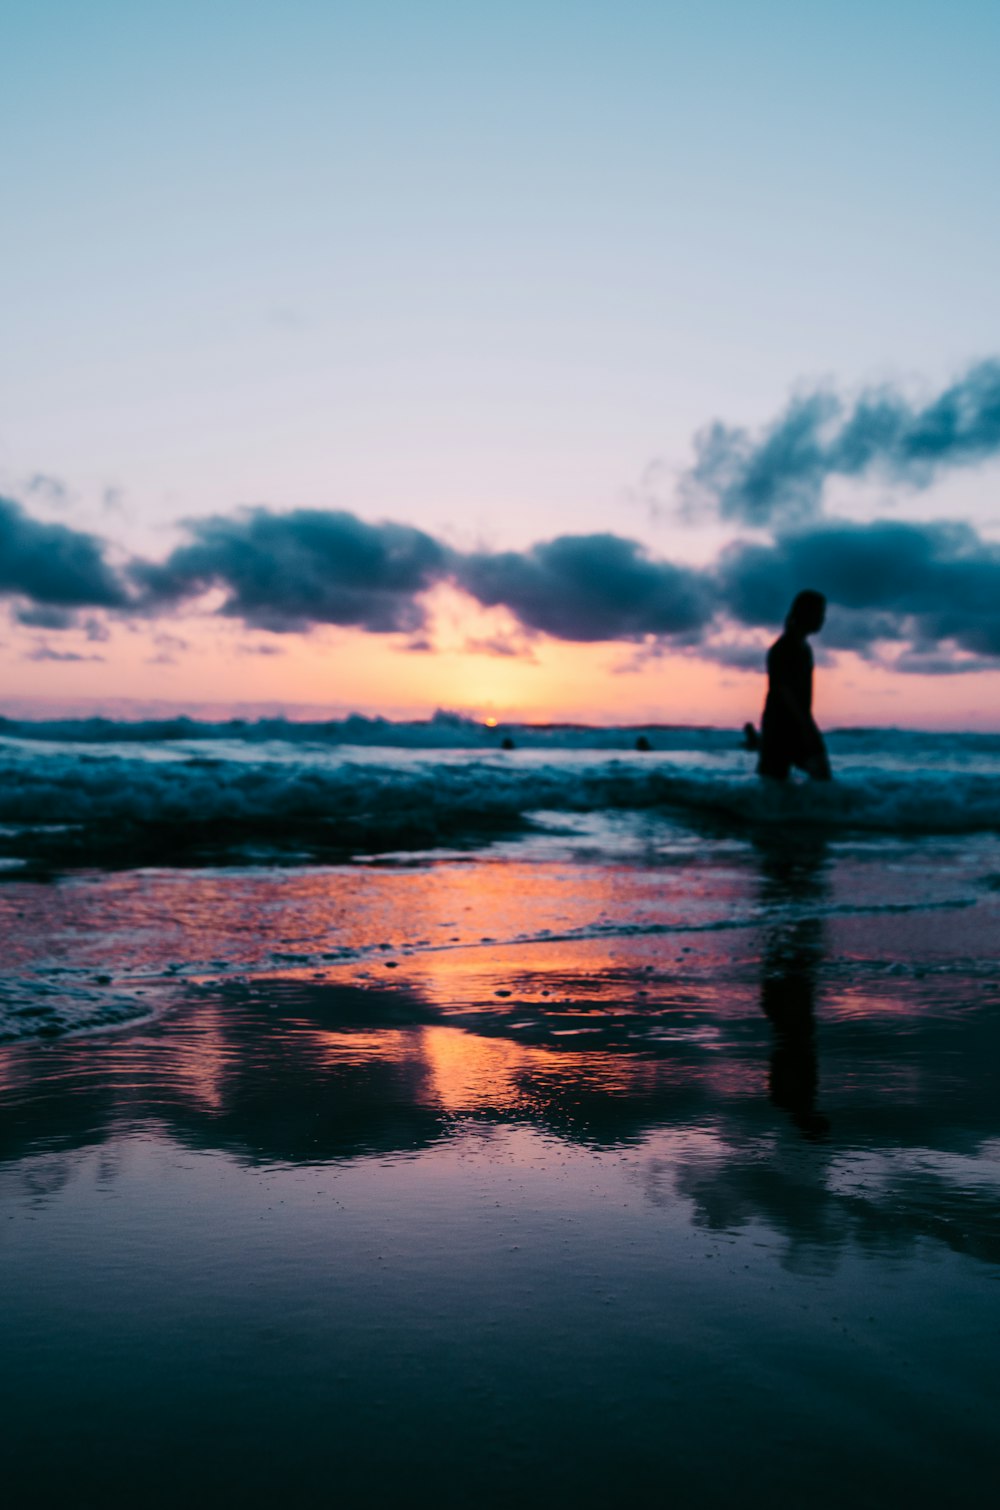 Foto de la silueta de una persona que camina en la orilla del mar bajo el cielo nublado durante la hora dorada